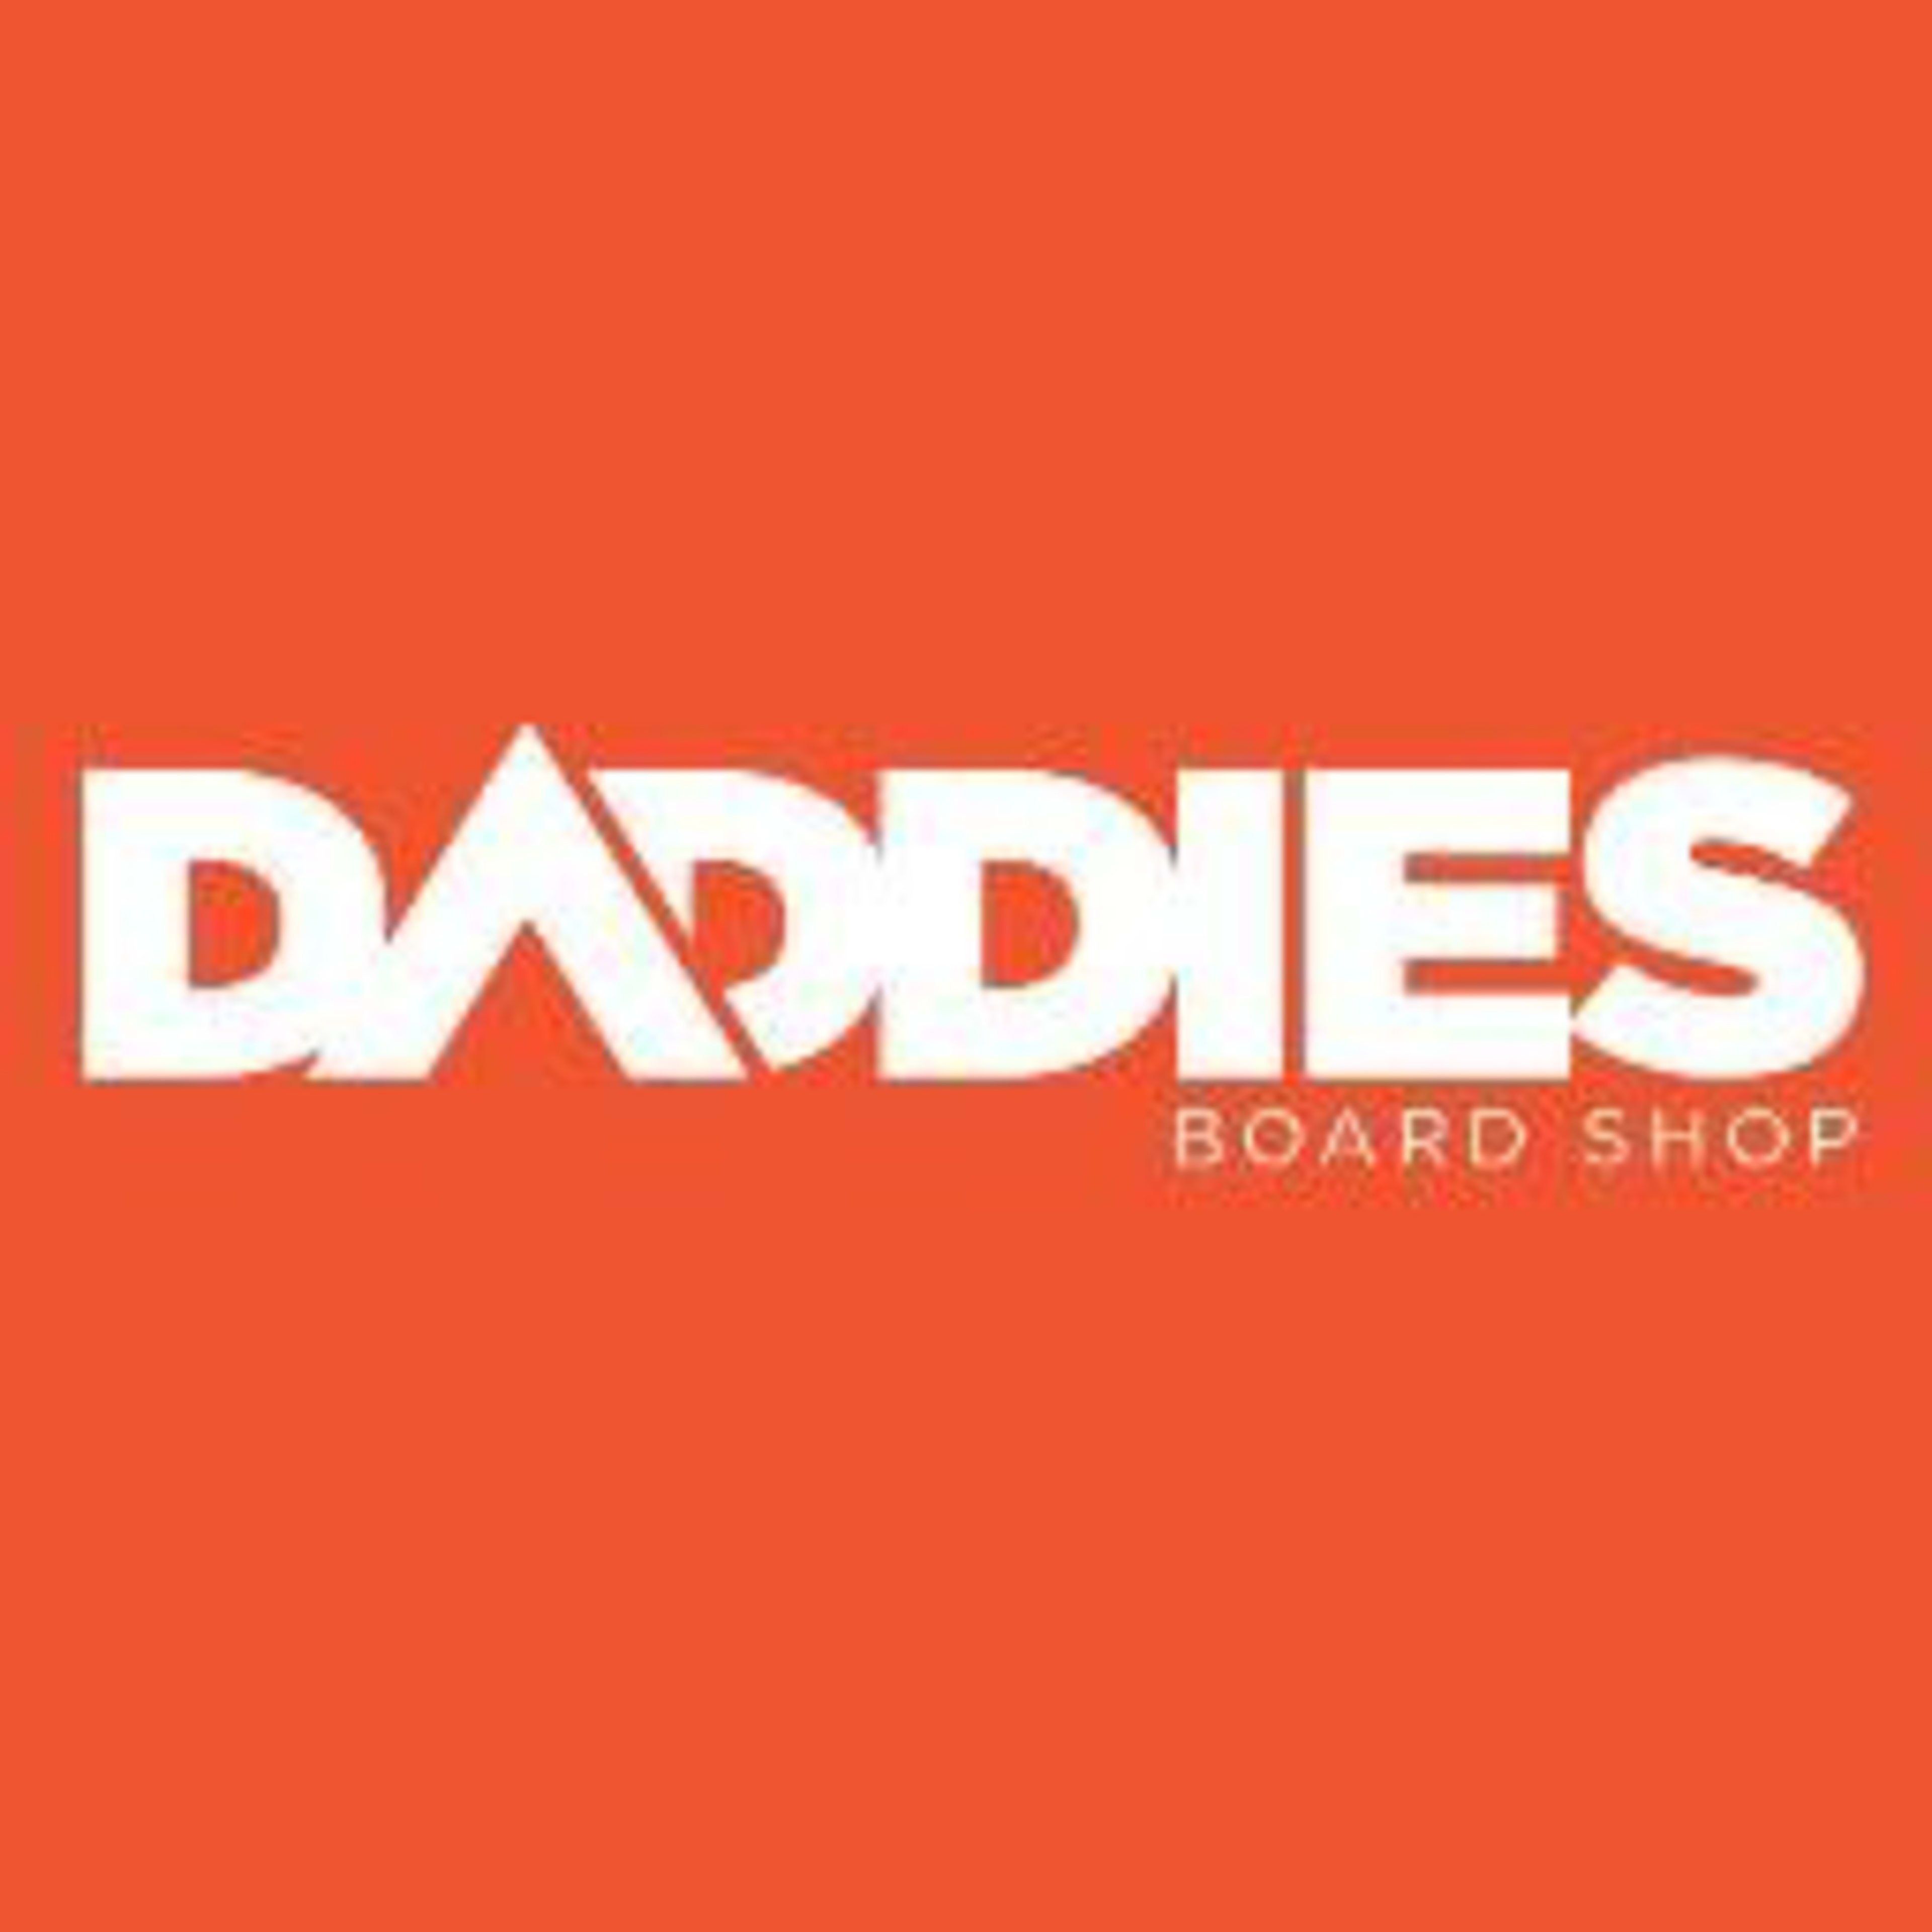 Daddies Board Shop Code